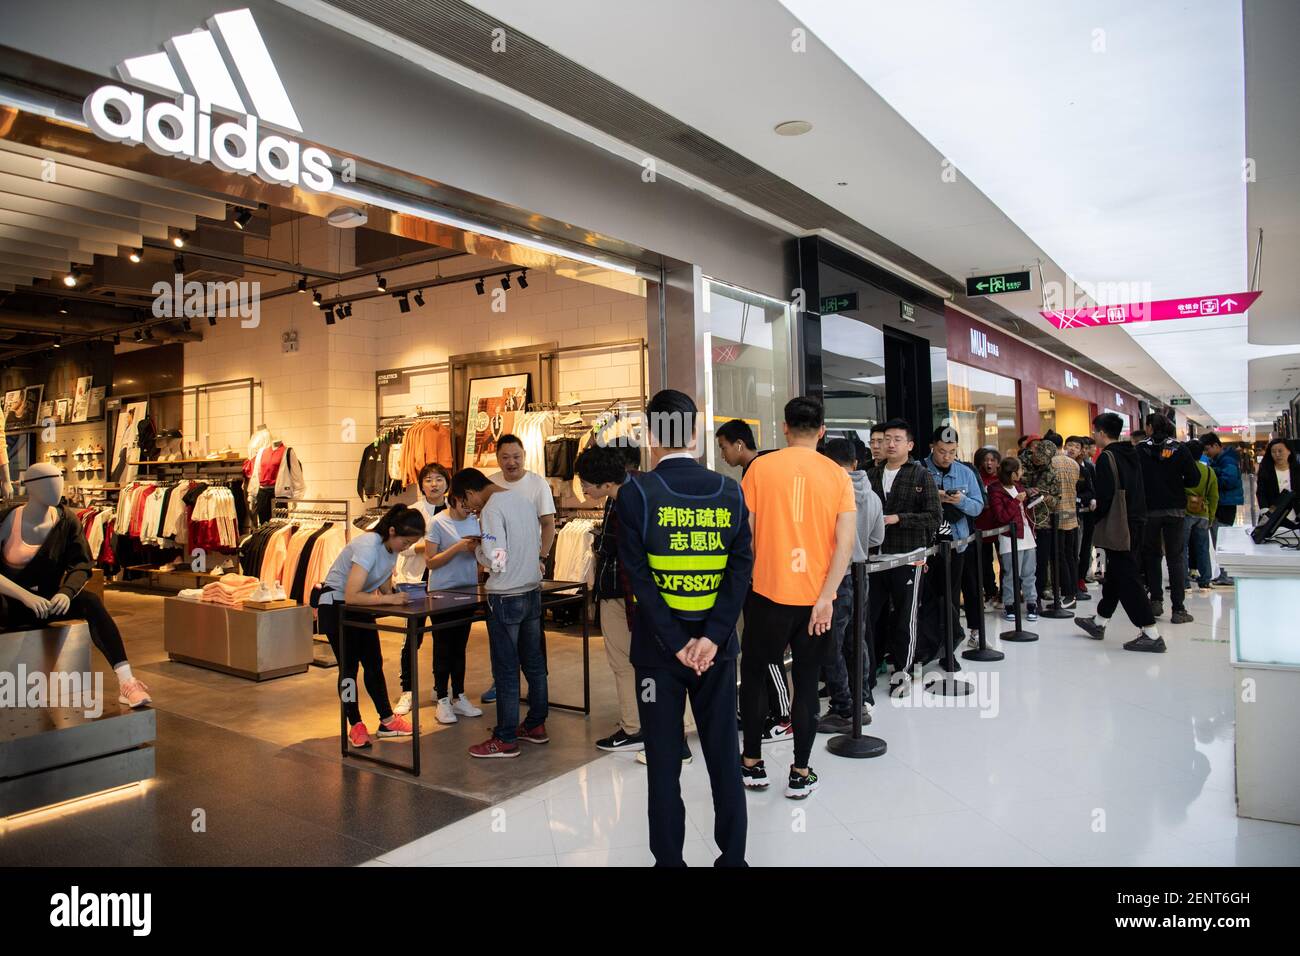 abeja Implacable sociedad Los consumidores se alinean para comprar el recién lanzado Adidas Yeezy,  una colaboración entre la Marca alemana de ropa deportiva Adidas y el  rapero estadounidense Kanye West, en una tienda Adidas en